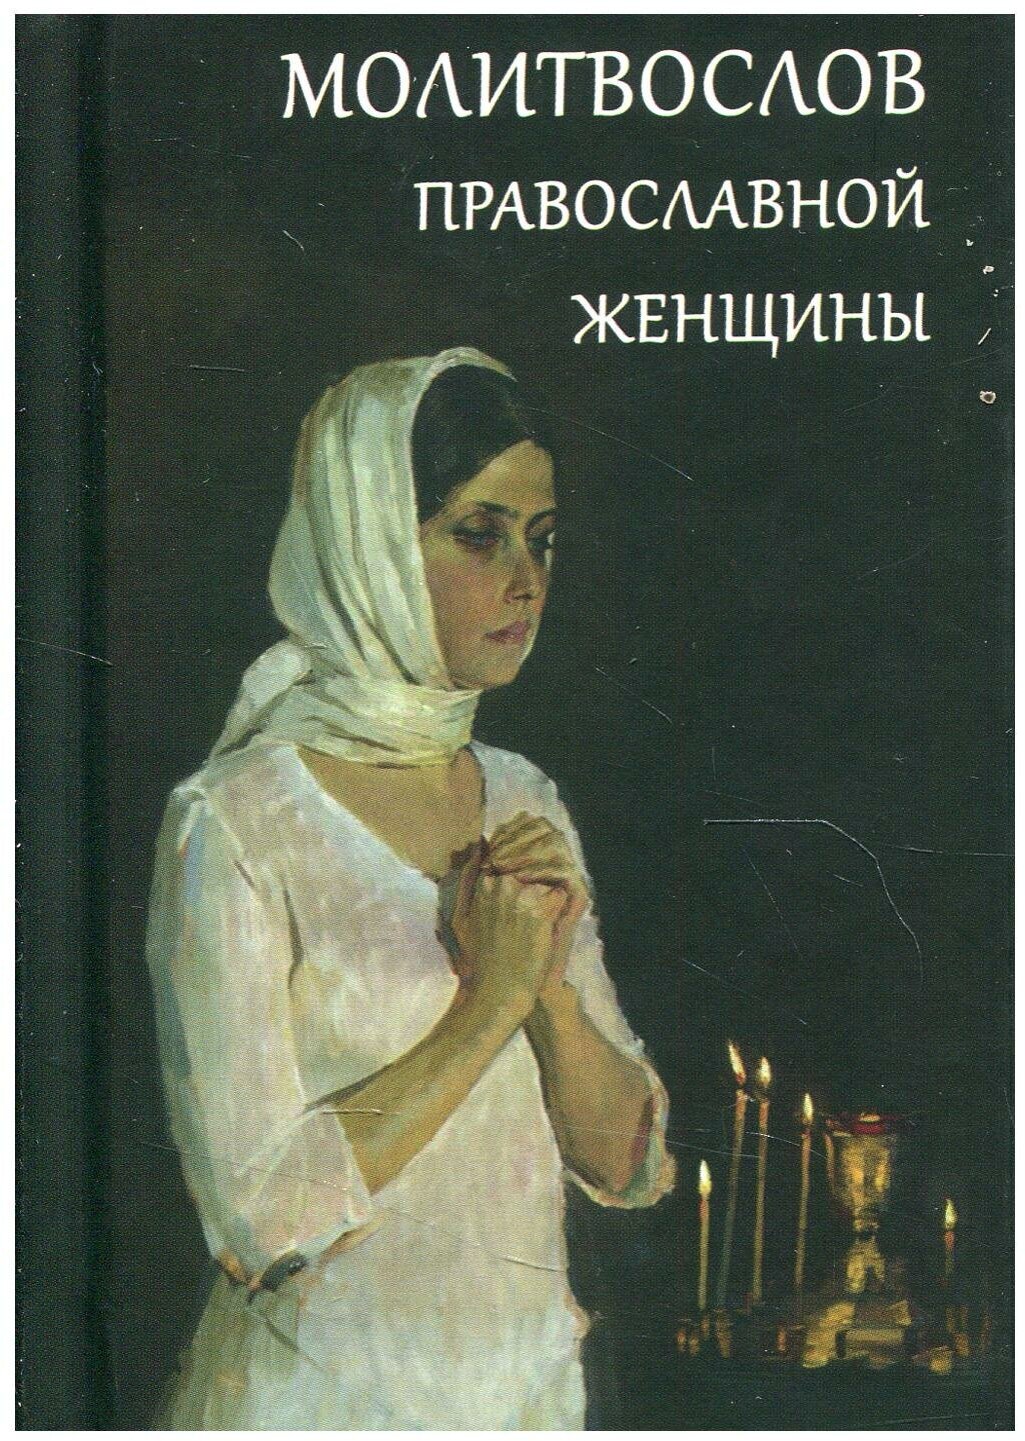 Молитвослов православной женщины. Летопись